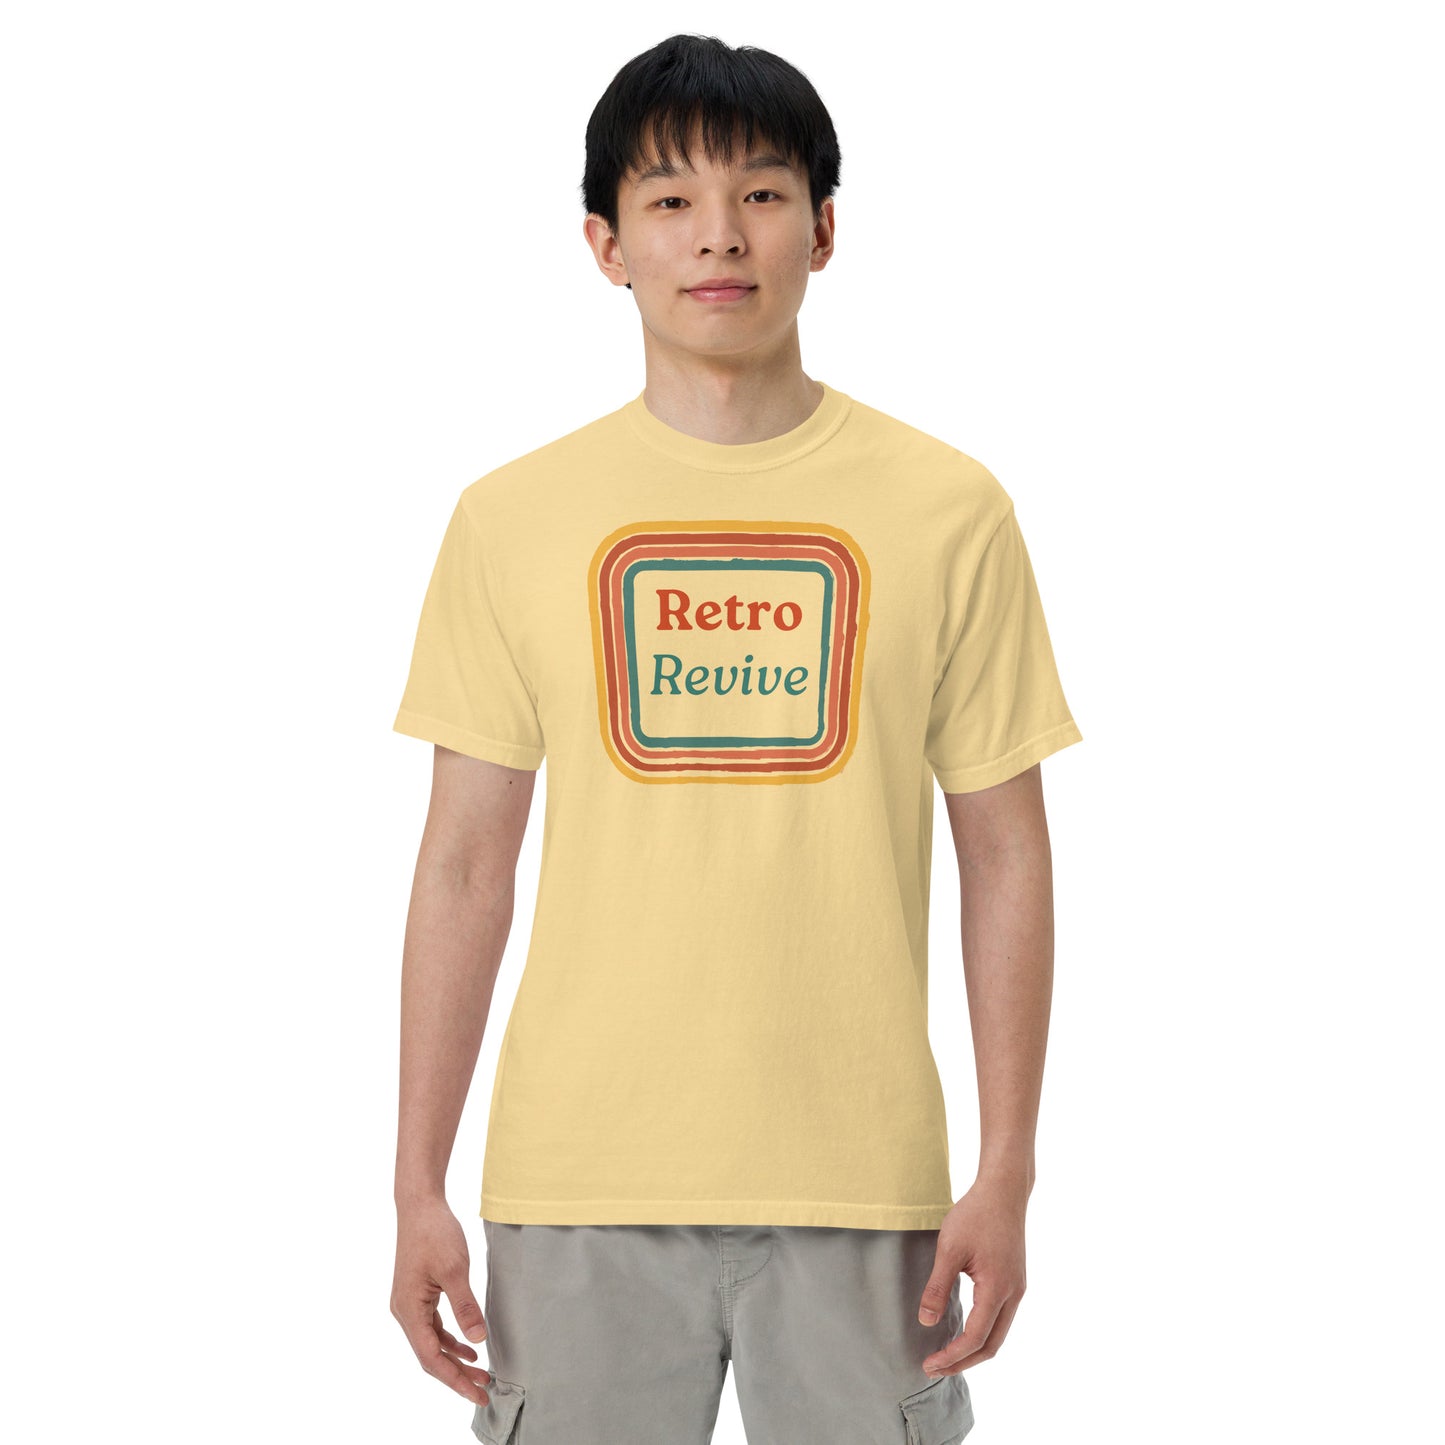 Retro Revive 70's Square Design Men’s Comforts Color T-Shirt